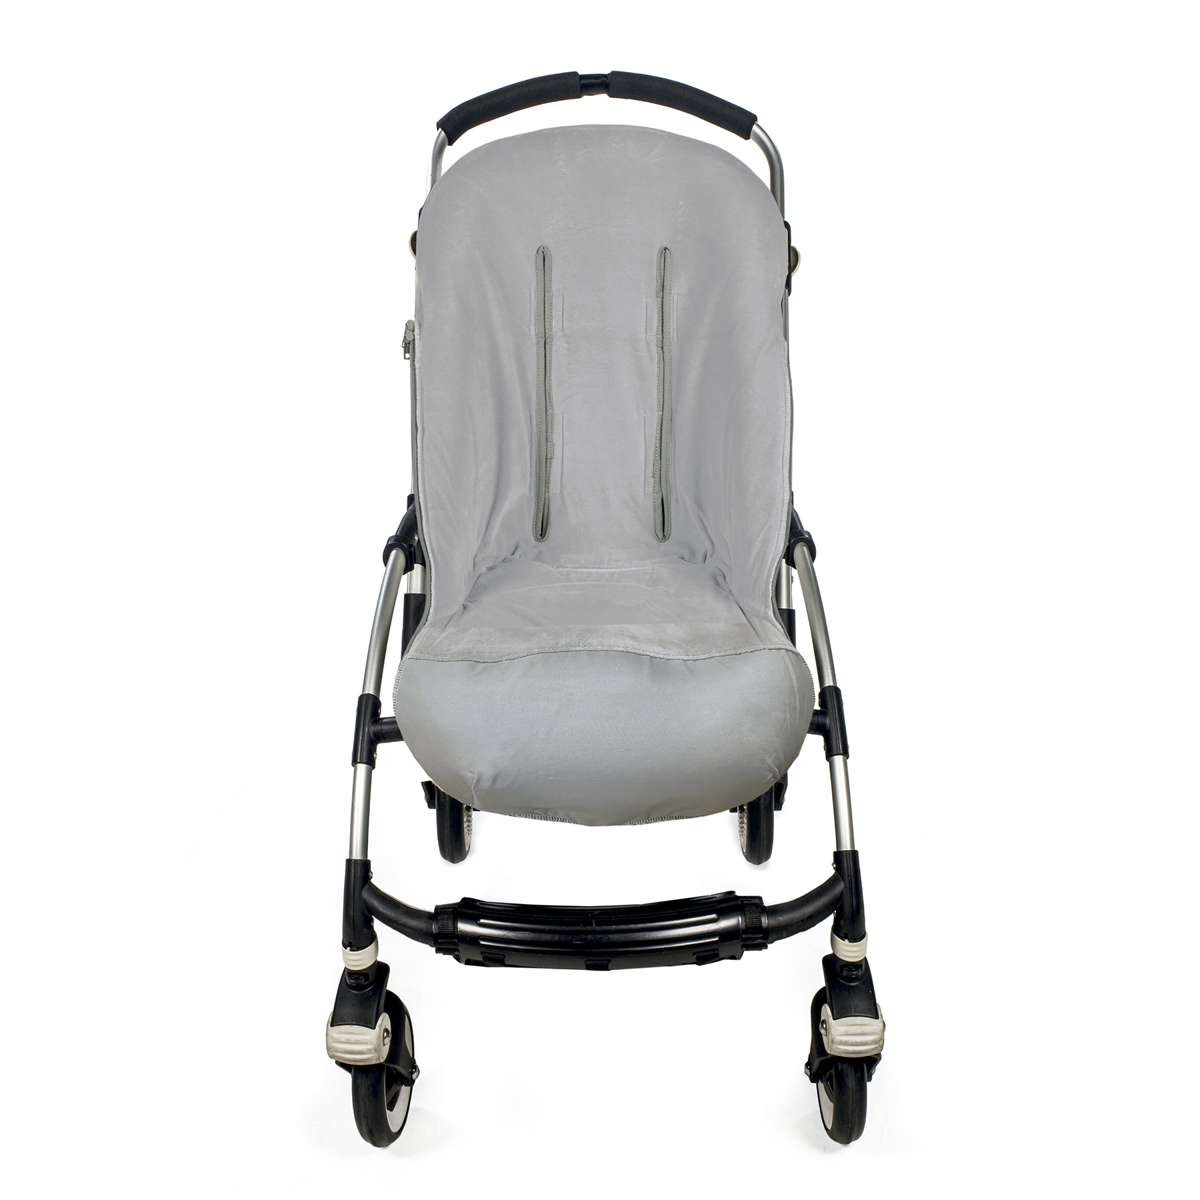 Saco Capazo New Verano Dakota Vera Gris [saco-capazo-new-verano-dakota-ve]  - 85,91€ : Sacos silla paseo, Fundas para silla bebe